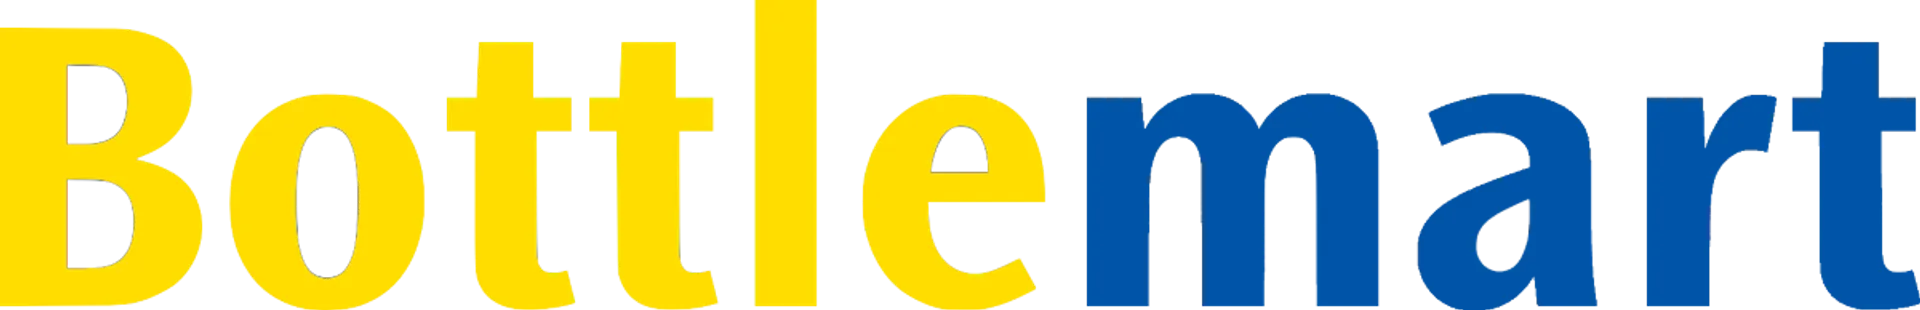 BOTTLEMART logo